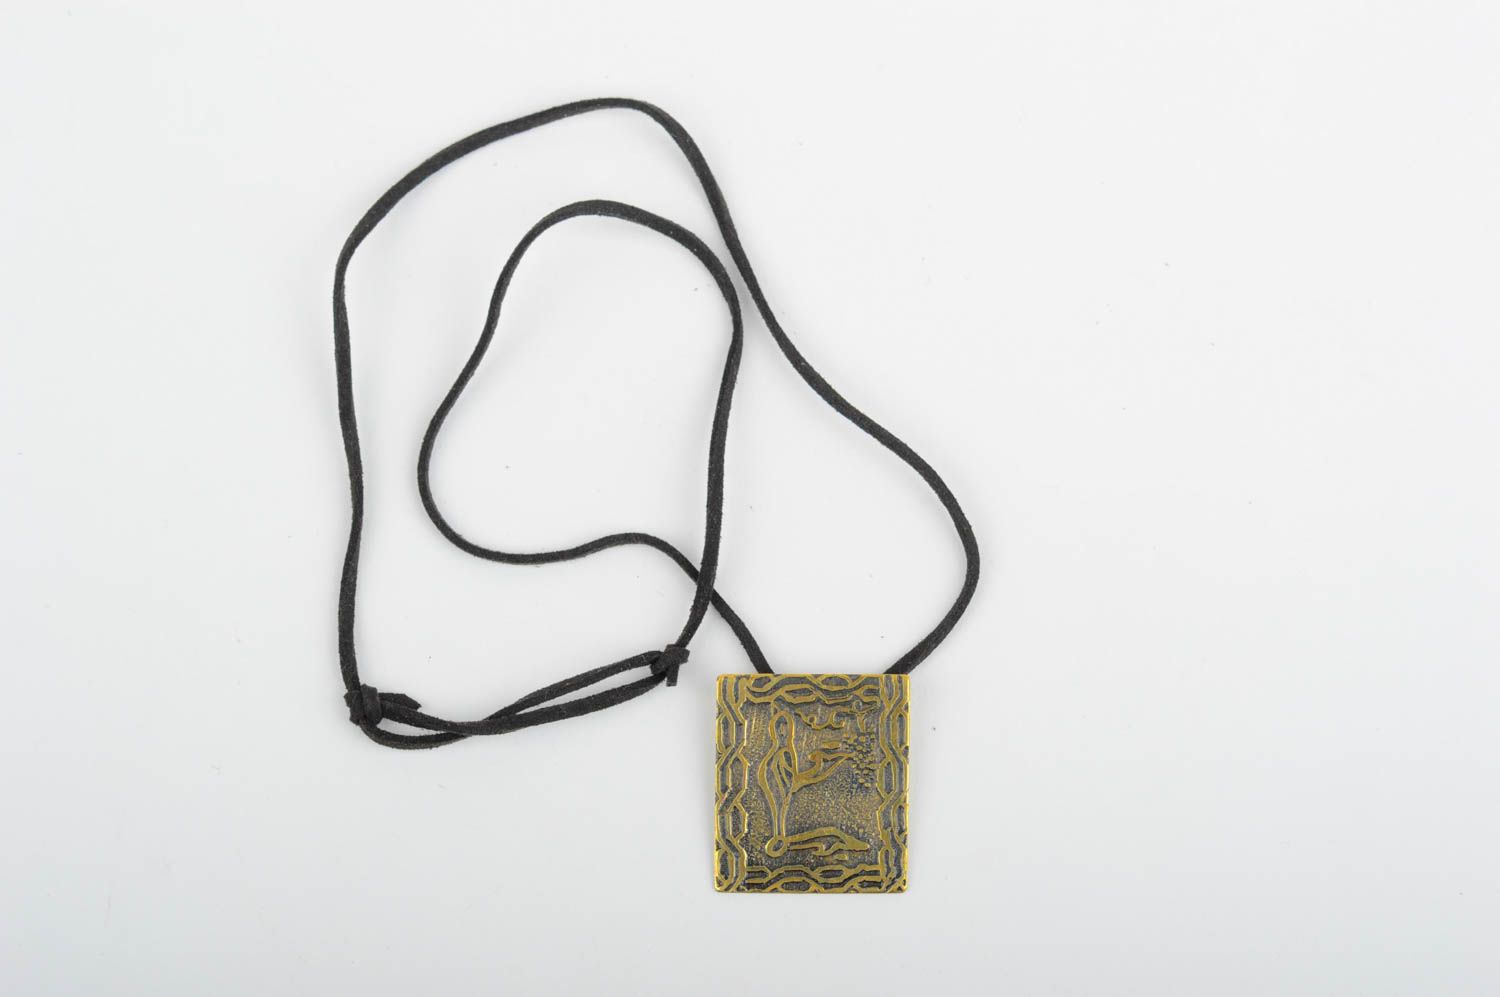 Квадратная подвеска на шею металлическая бижутерия украшение из латуни фото 2